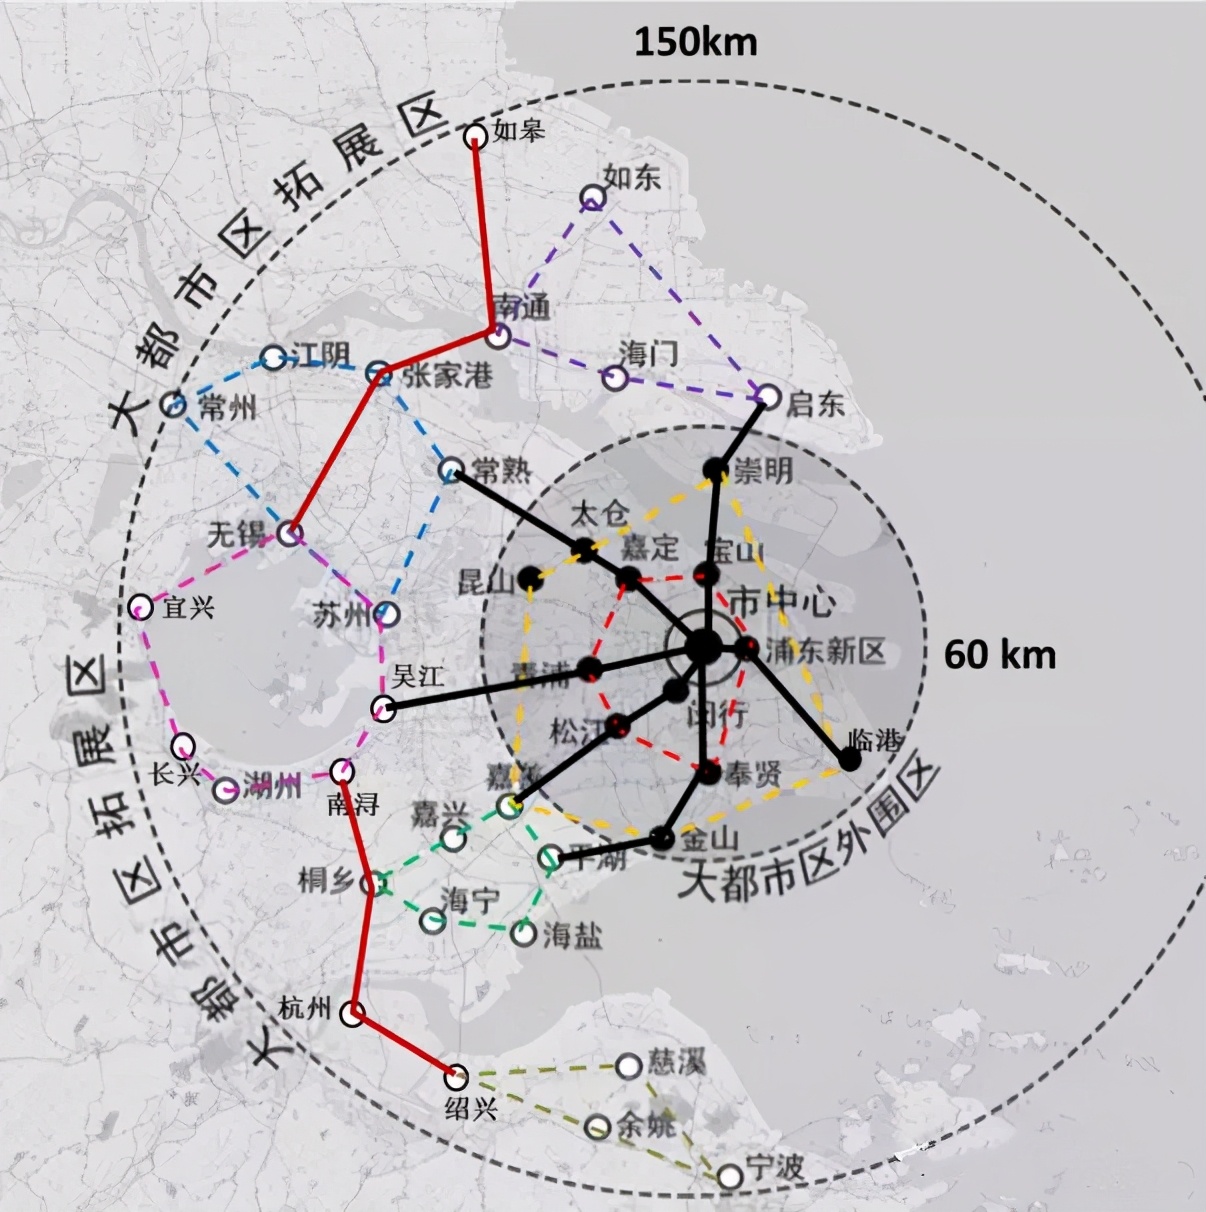 上海再提“五大新城”。这一回，让我们重新聚焦上海郊区